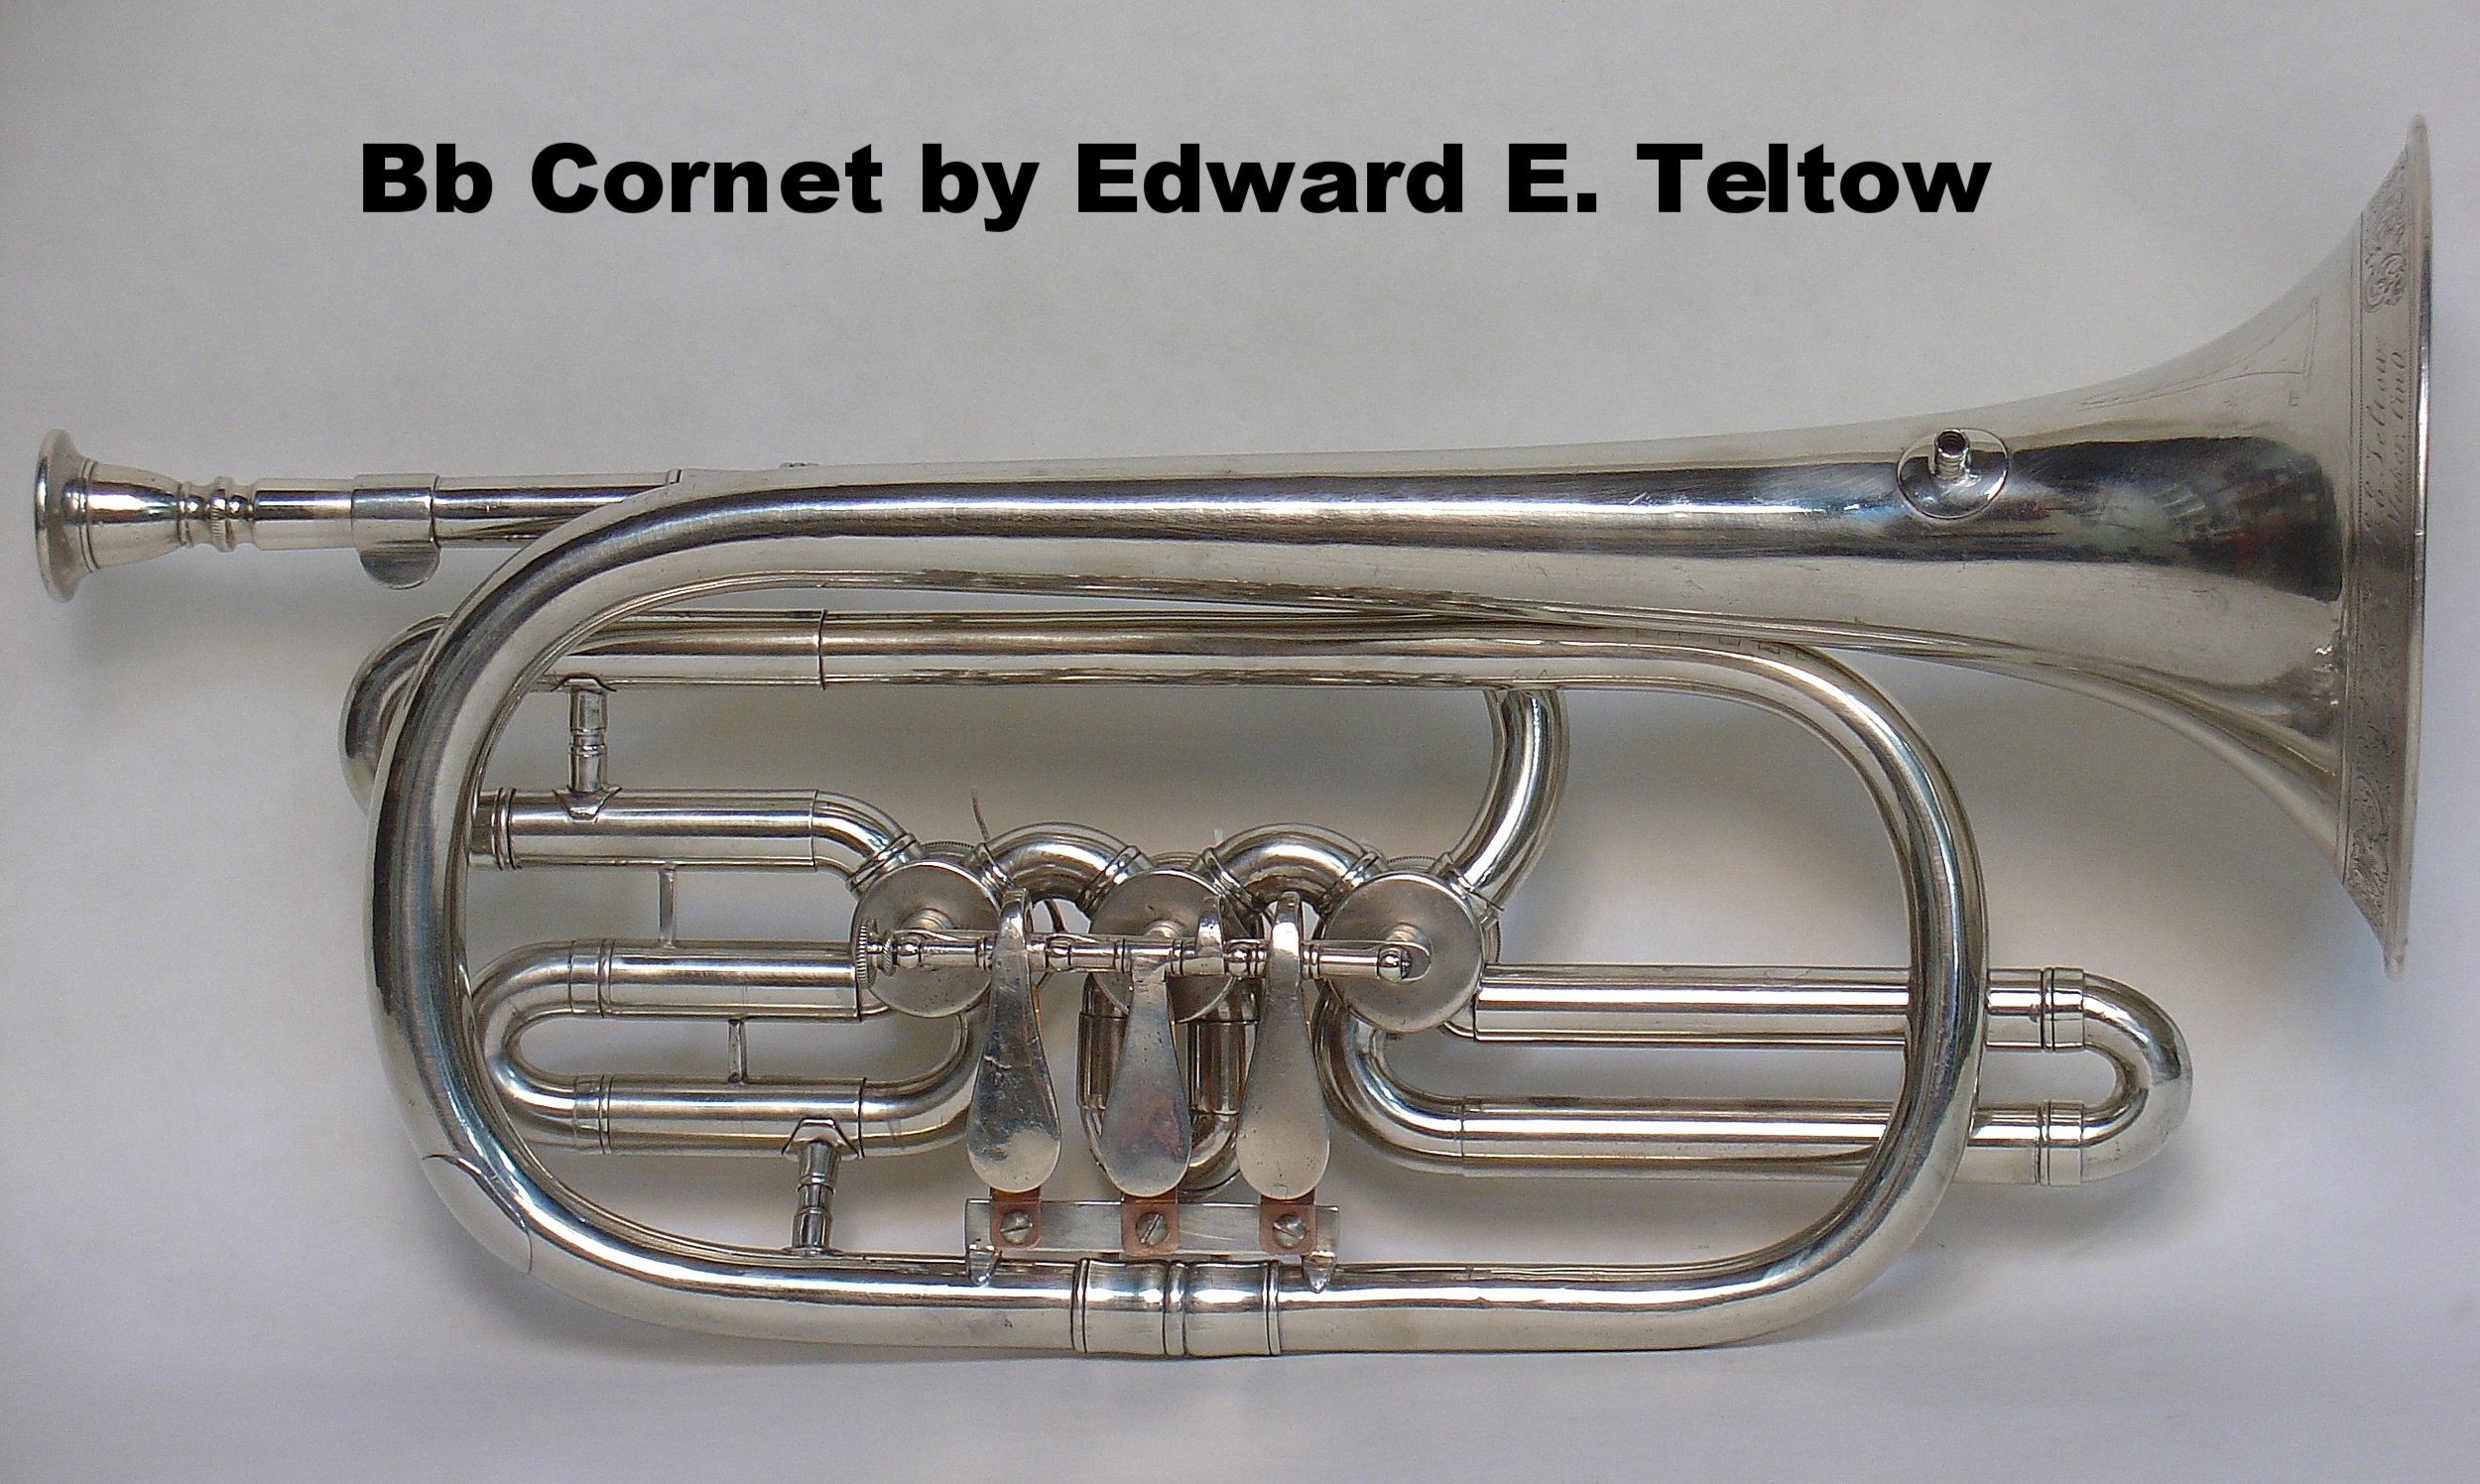 Bb Cornet by Edward E. Teltow